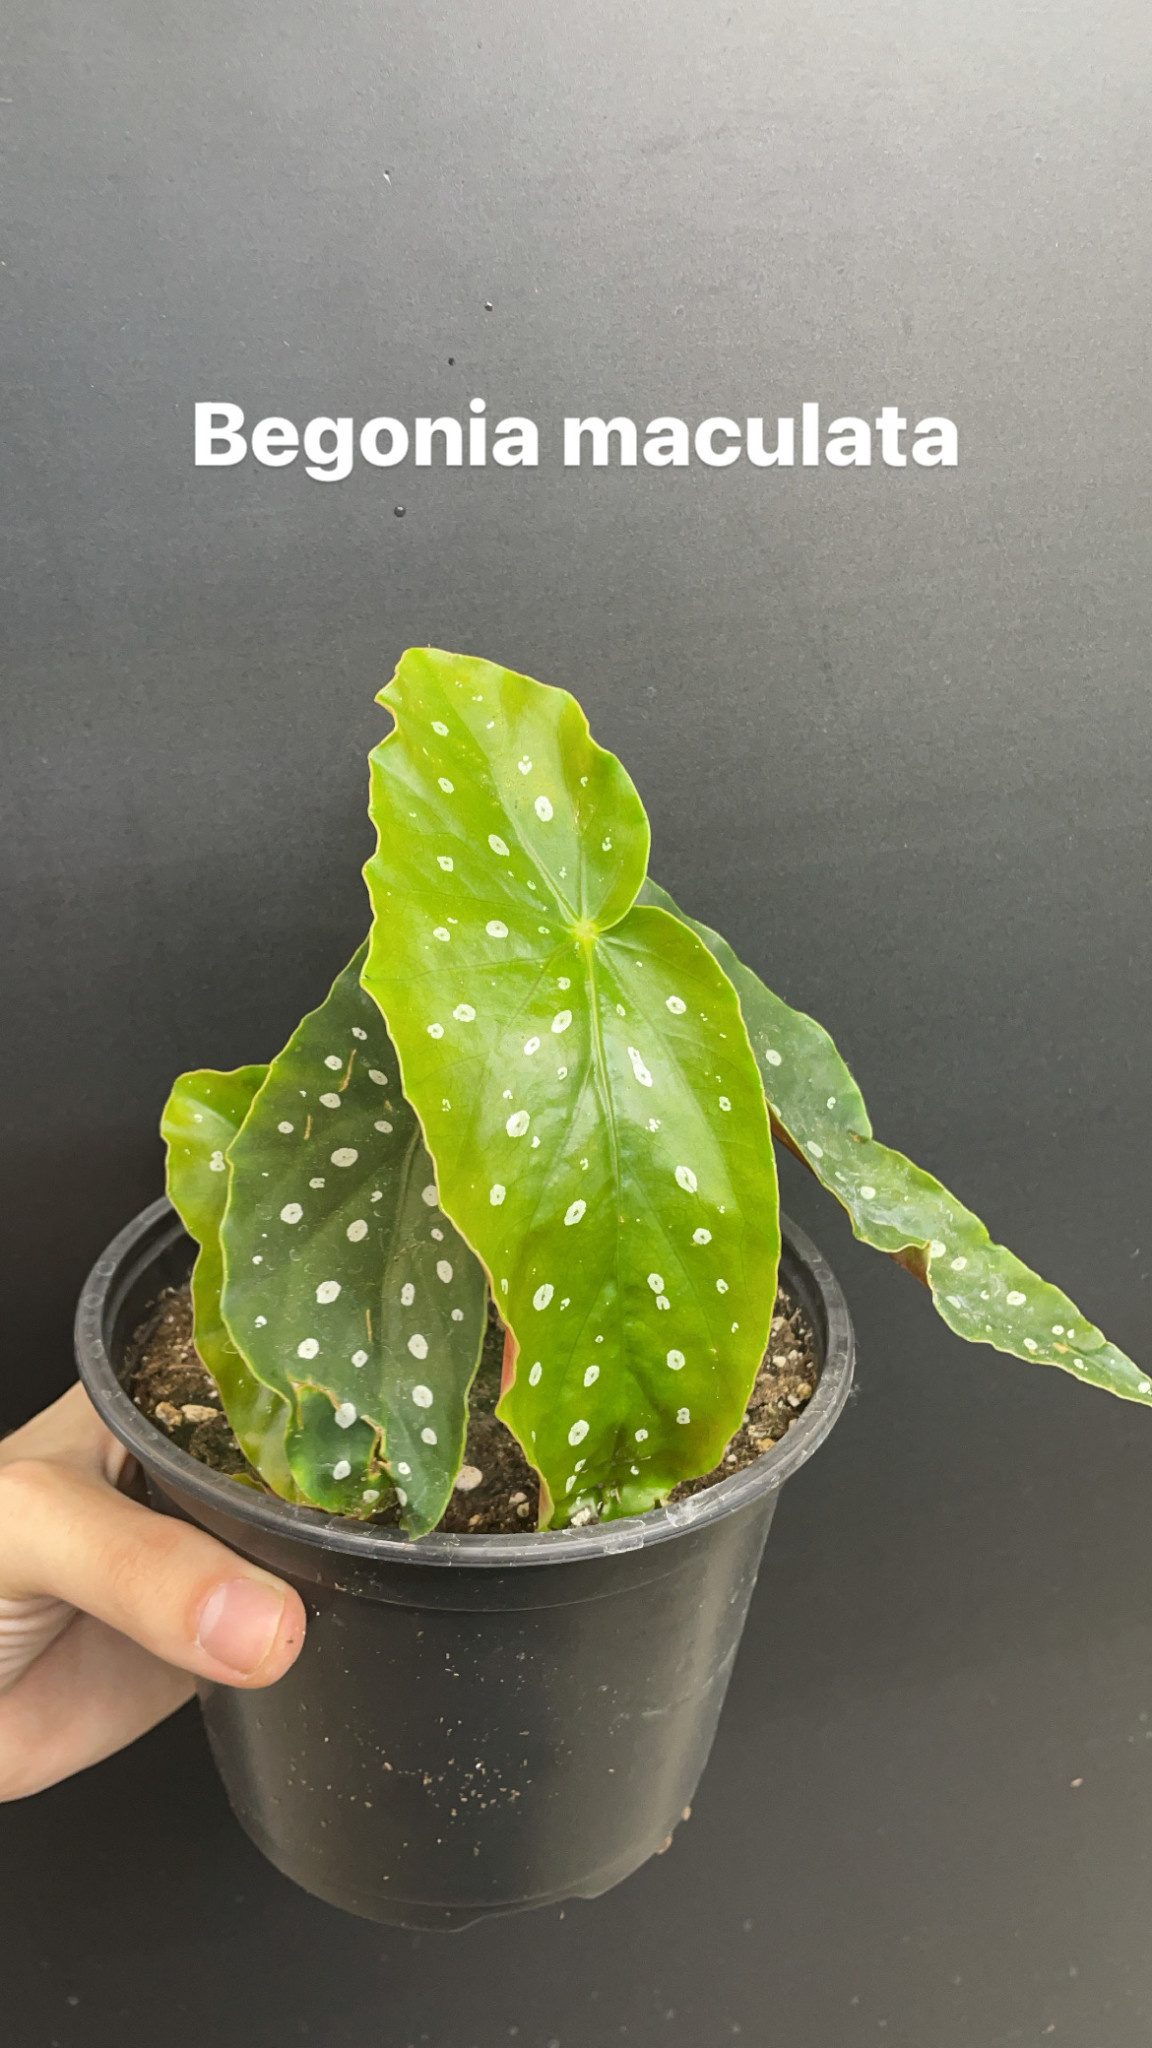 6" Begonia maculata